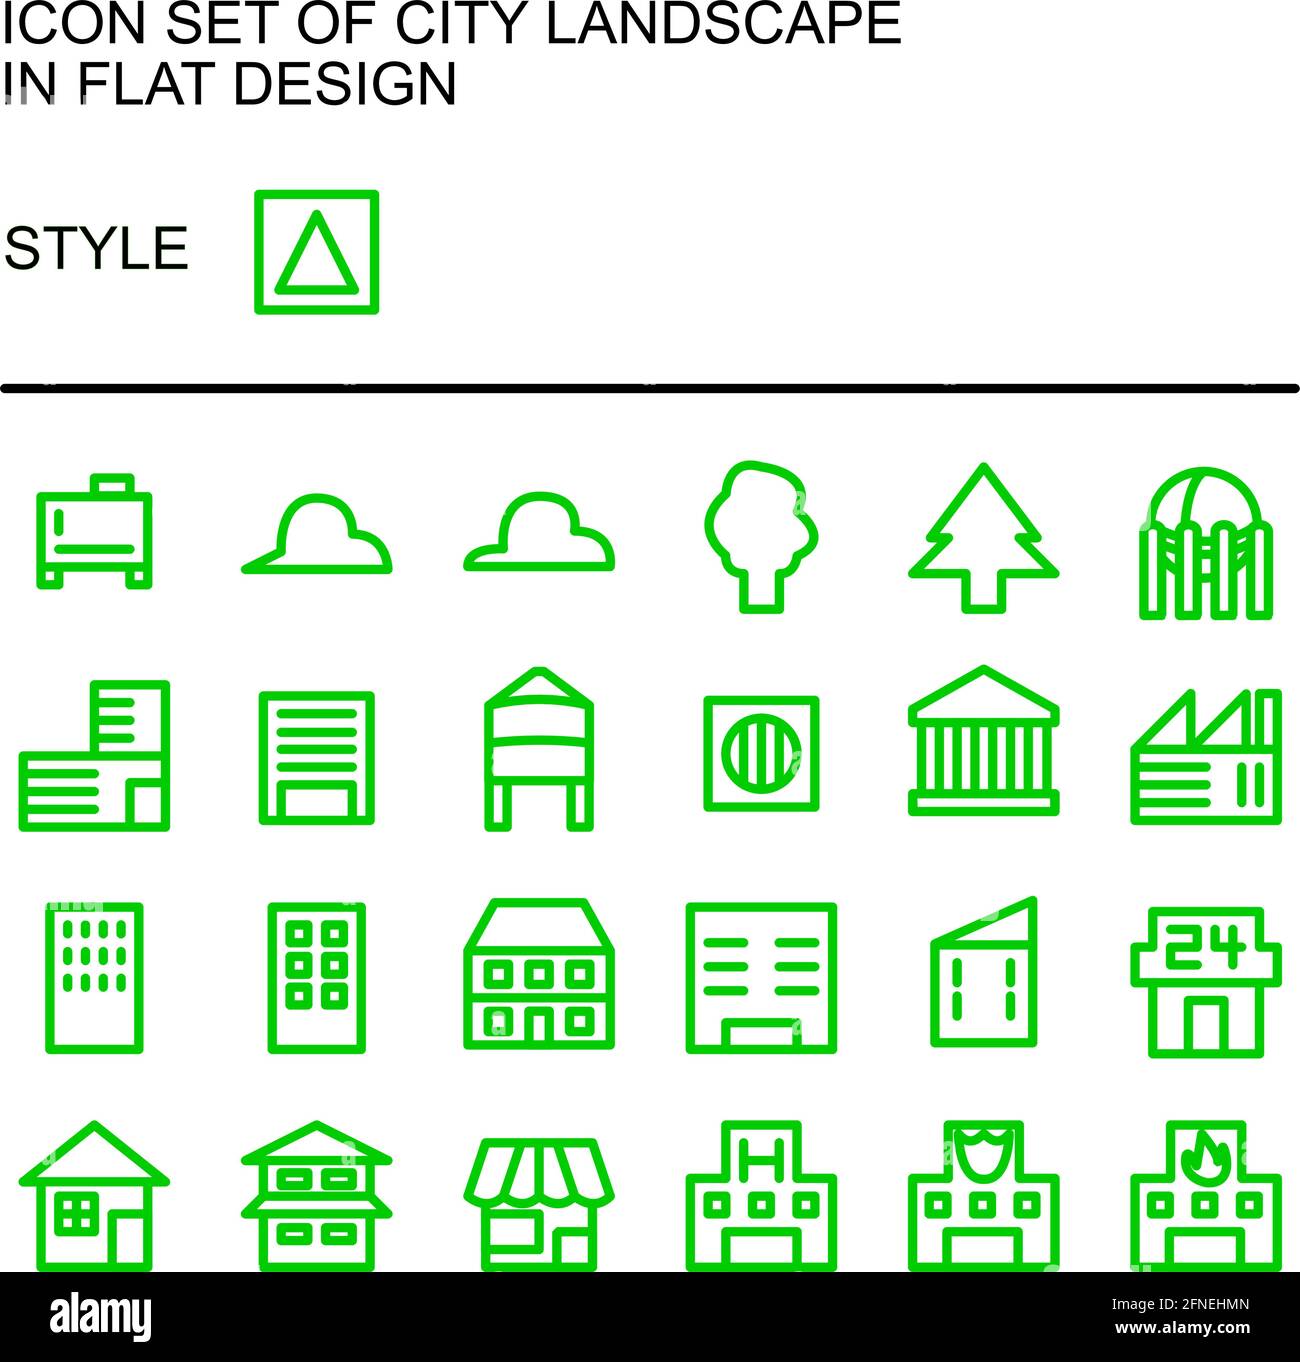 Icône de paysage urbain, conception plate avec lignes vertes, remplissage blanc. Illustration de Vecteur